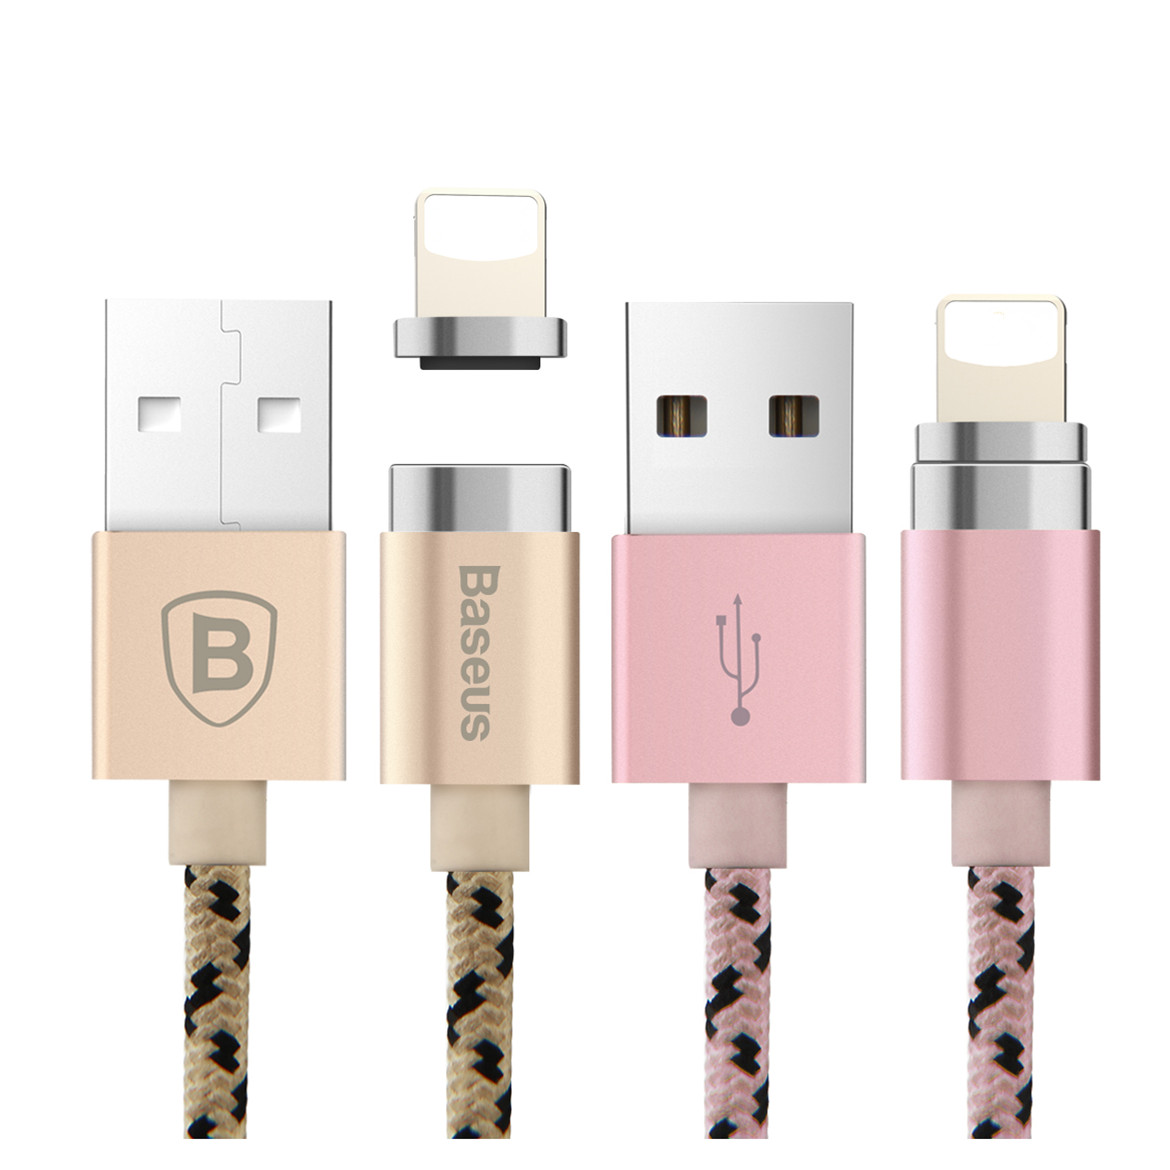 Кабель "Baseus" New insnap series магнитный кабель для Lightning/Micro USB 1.2M/2.4A цвет розовое зо.